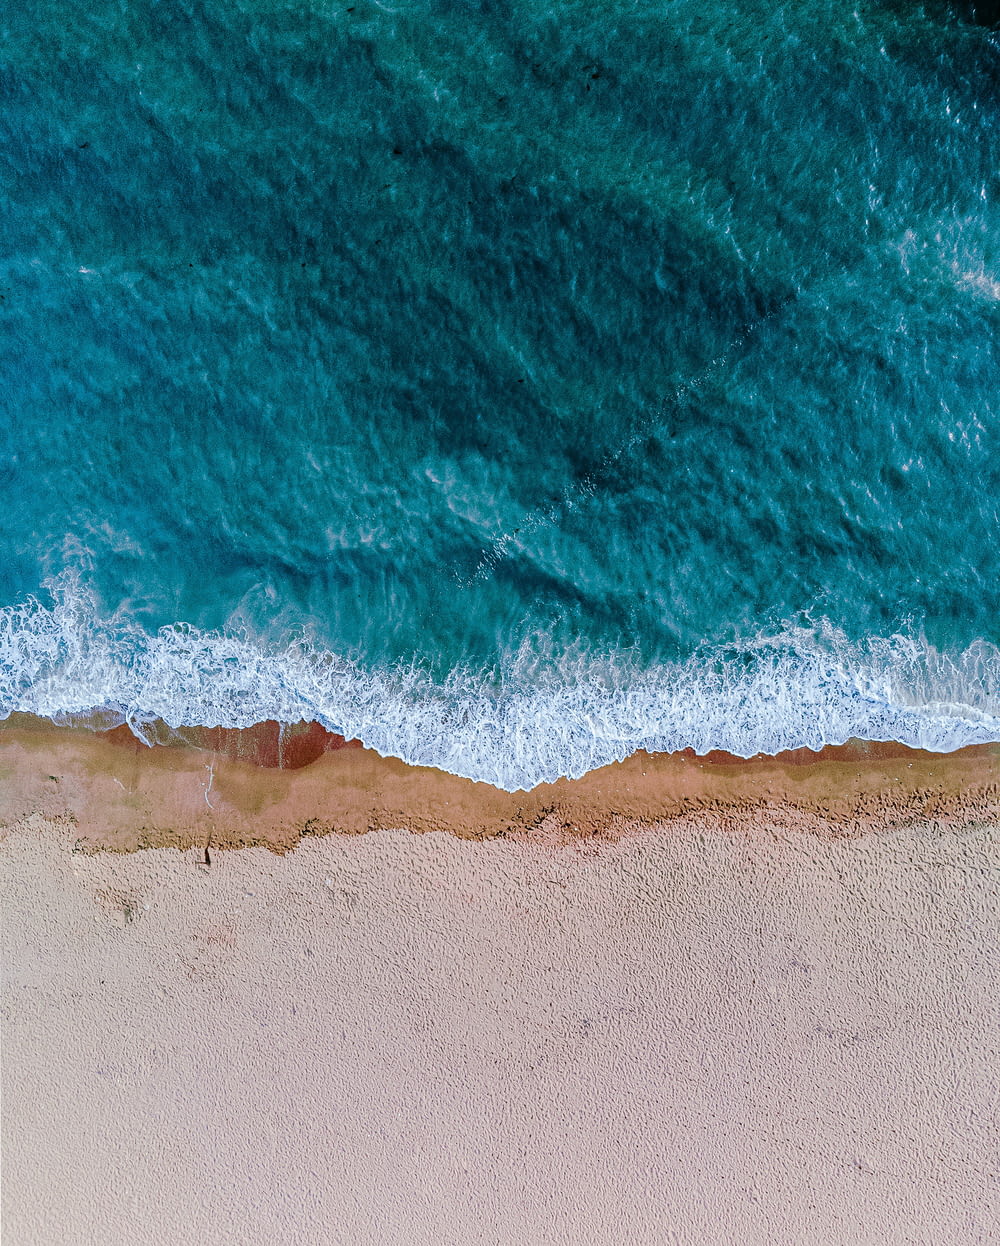 an aerial view of a sandy beach and ocean